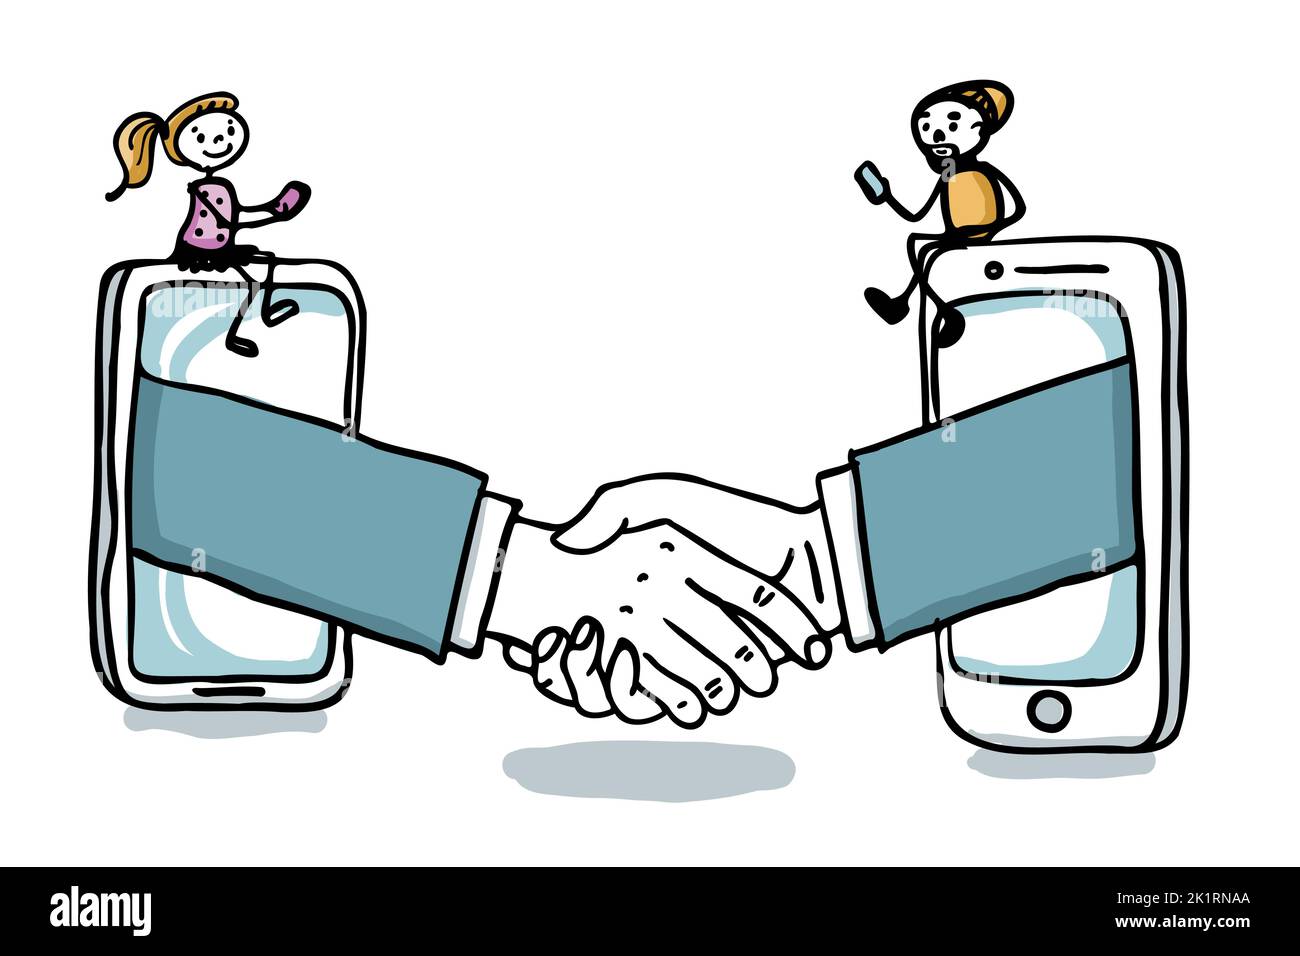 Vertrag und Handshake über Internet - Online-Geschäft mit Handy - digitales Zeitalter handgezeichnete Vektor-Illustration Stock Vektor